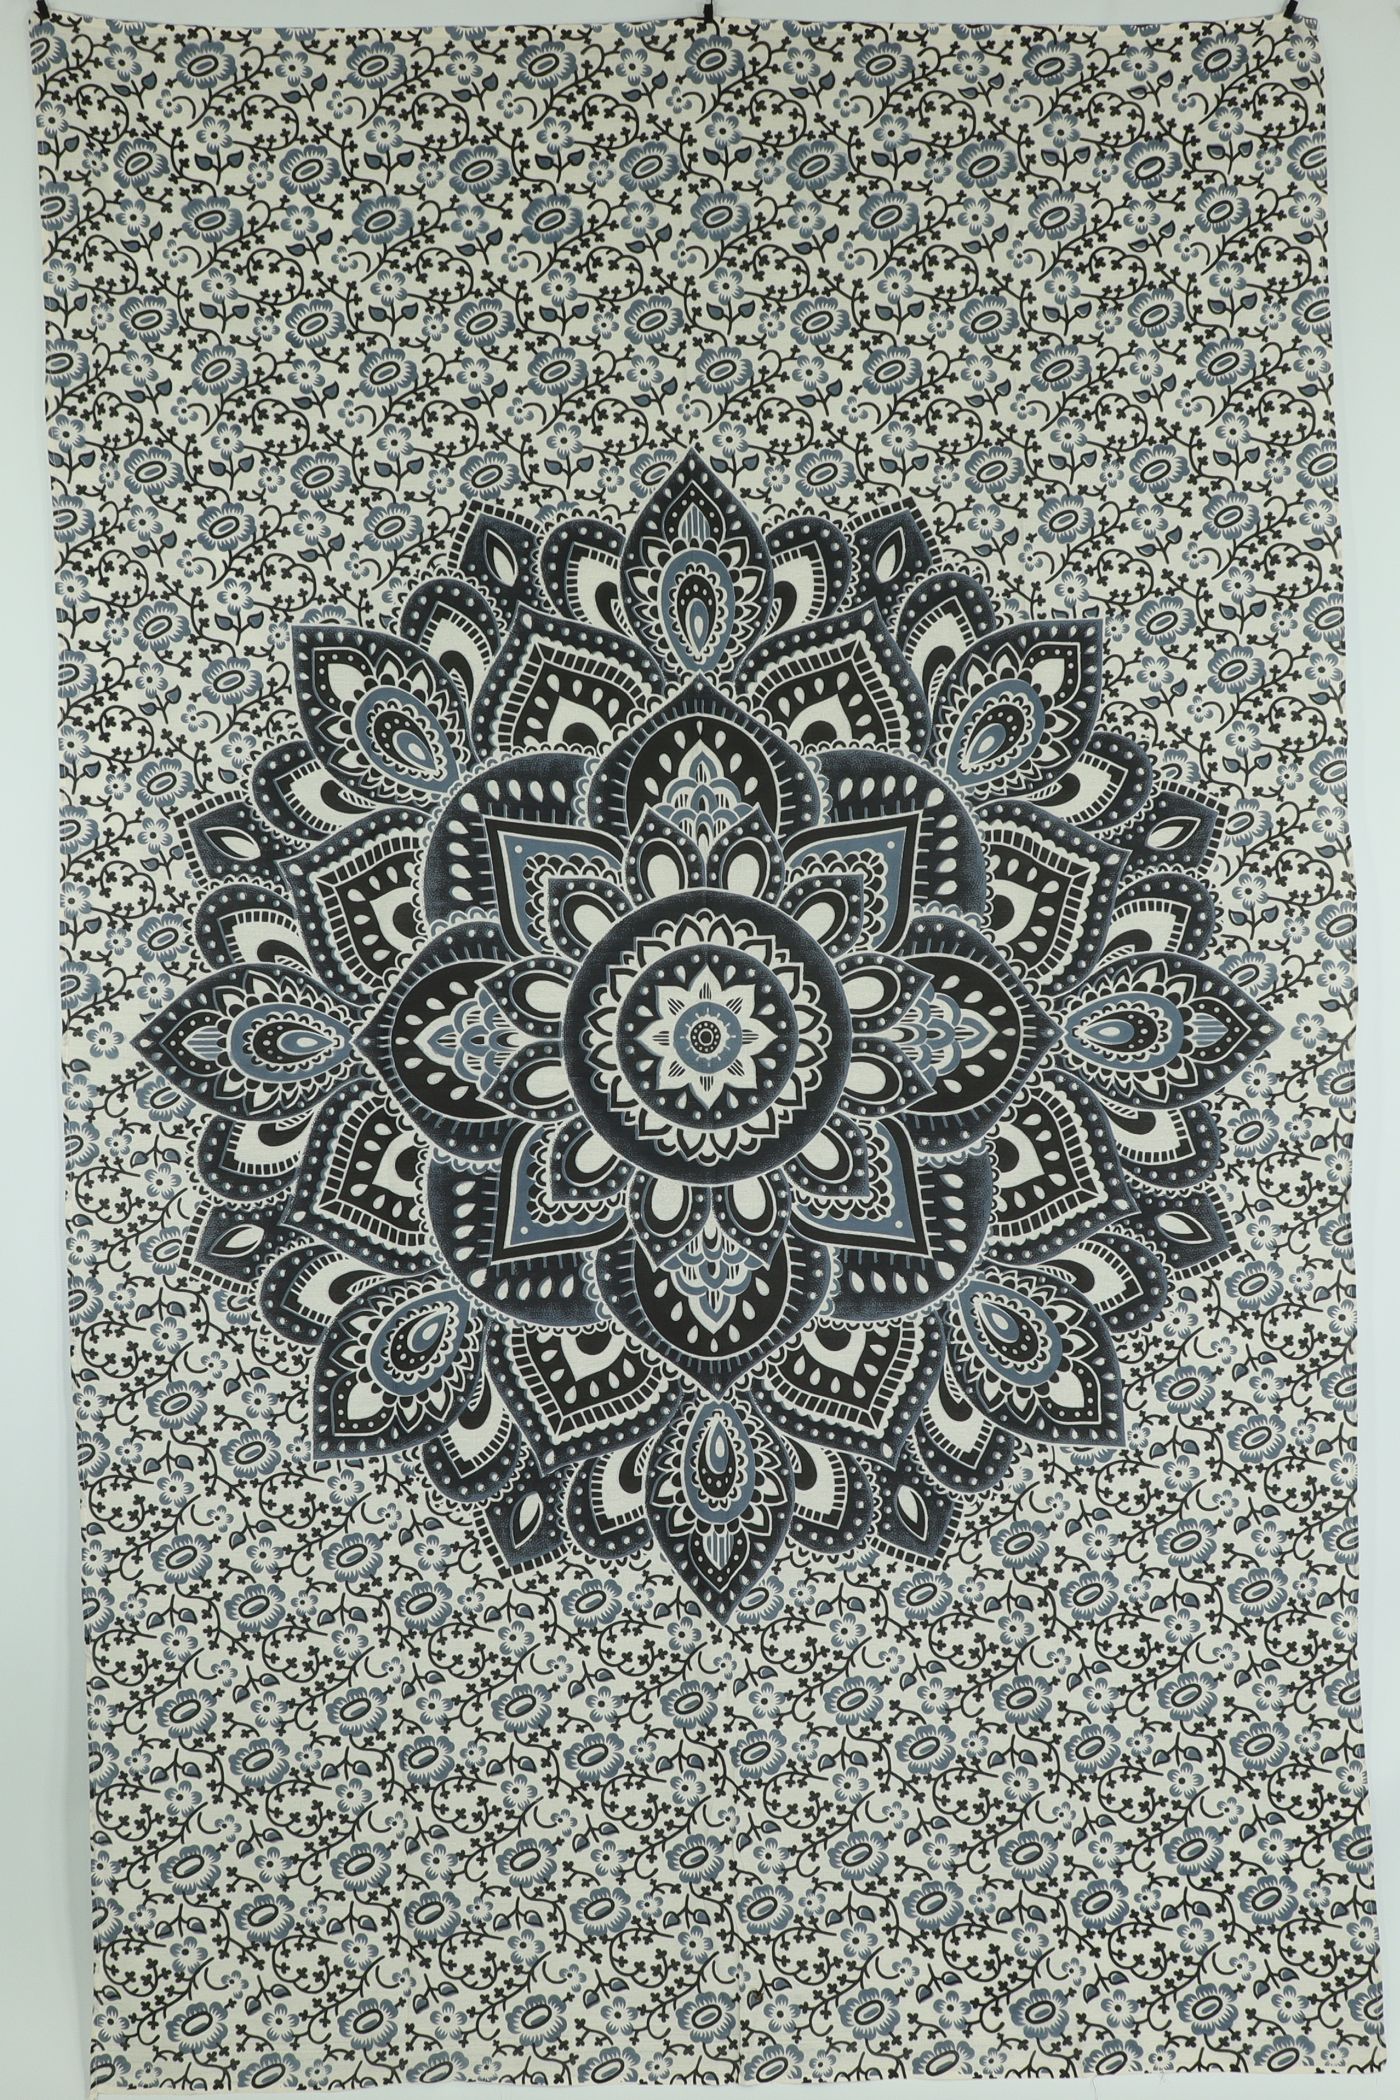 Wandtuch XL 130x210 - Mandala Lotus mit Blumen - 100% Baumwolle - detailreicher indischer Druck - mehrfarbig - dekoratives Tuch, Wandbild, Tagesdecke, Bedcover, Vorhang, Picknick-Decke, Strandtuch